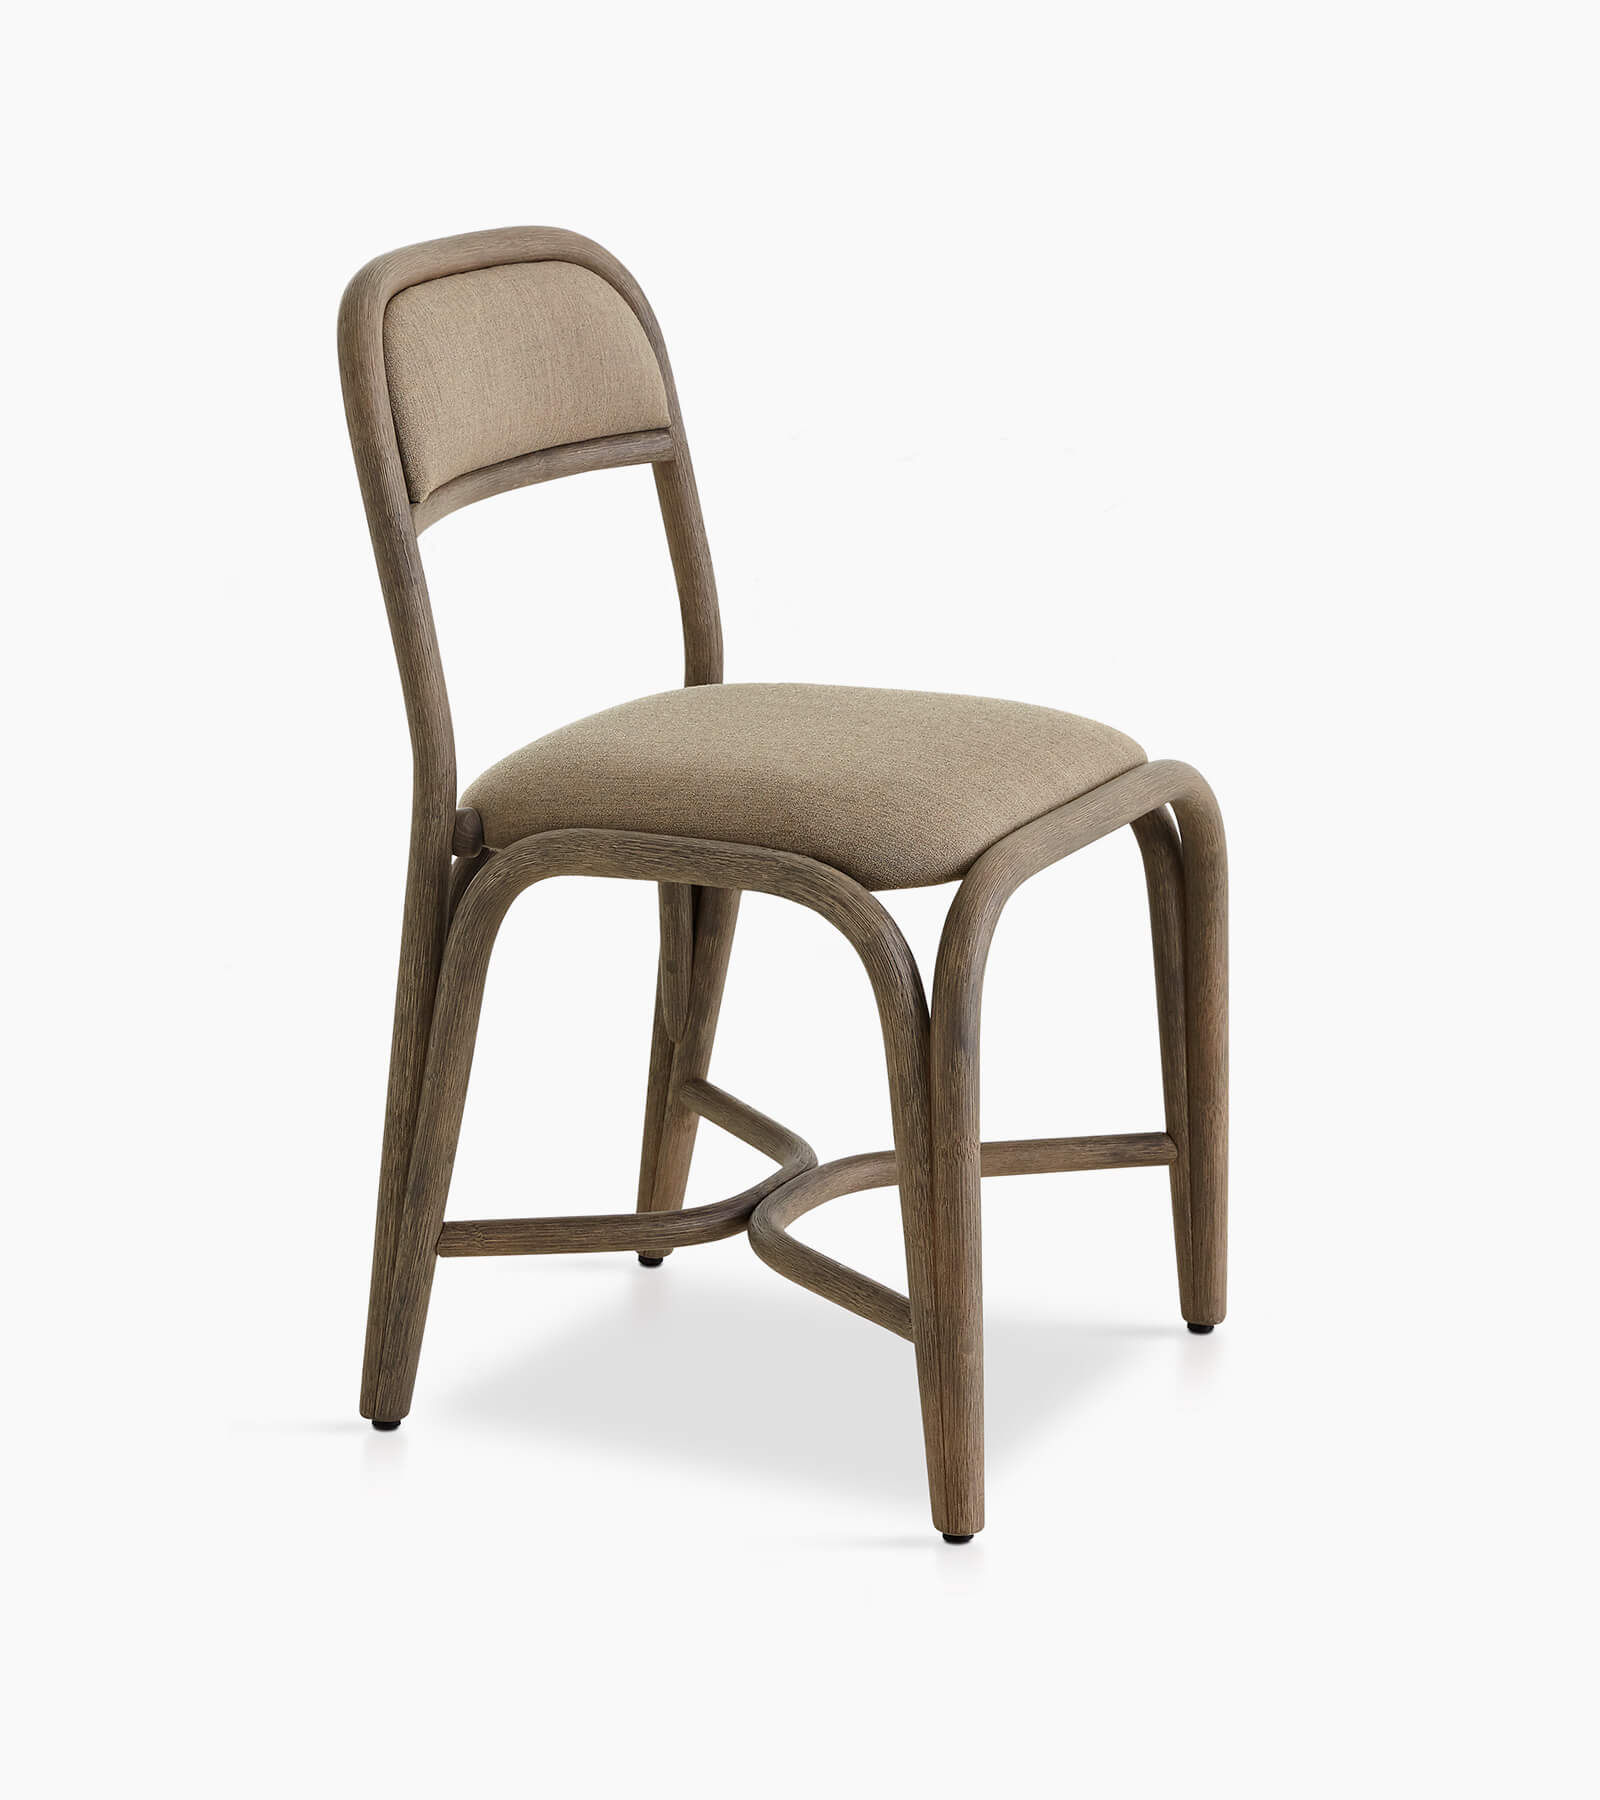 TinnappleMetz-Expormim-fontal-dining-chair-01